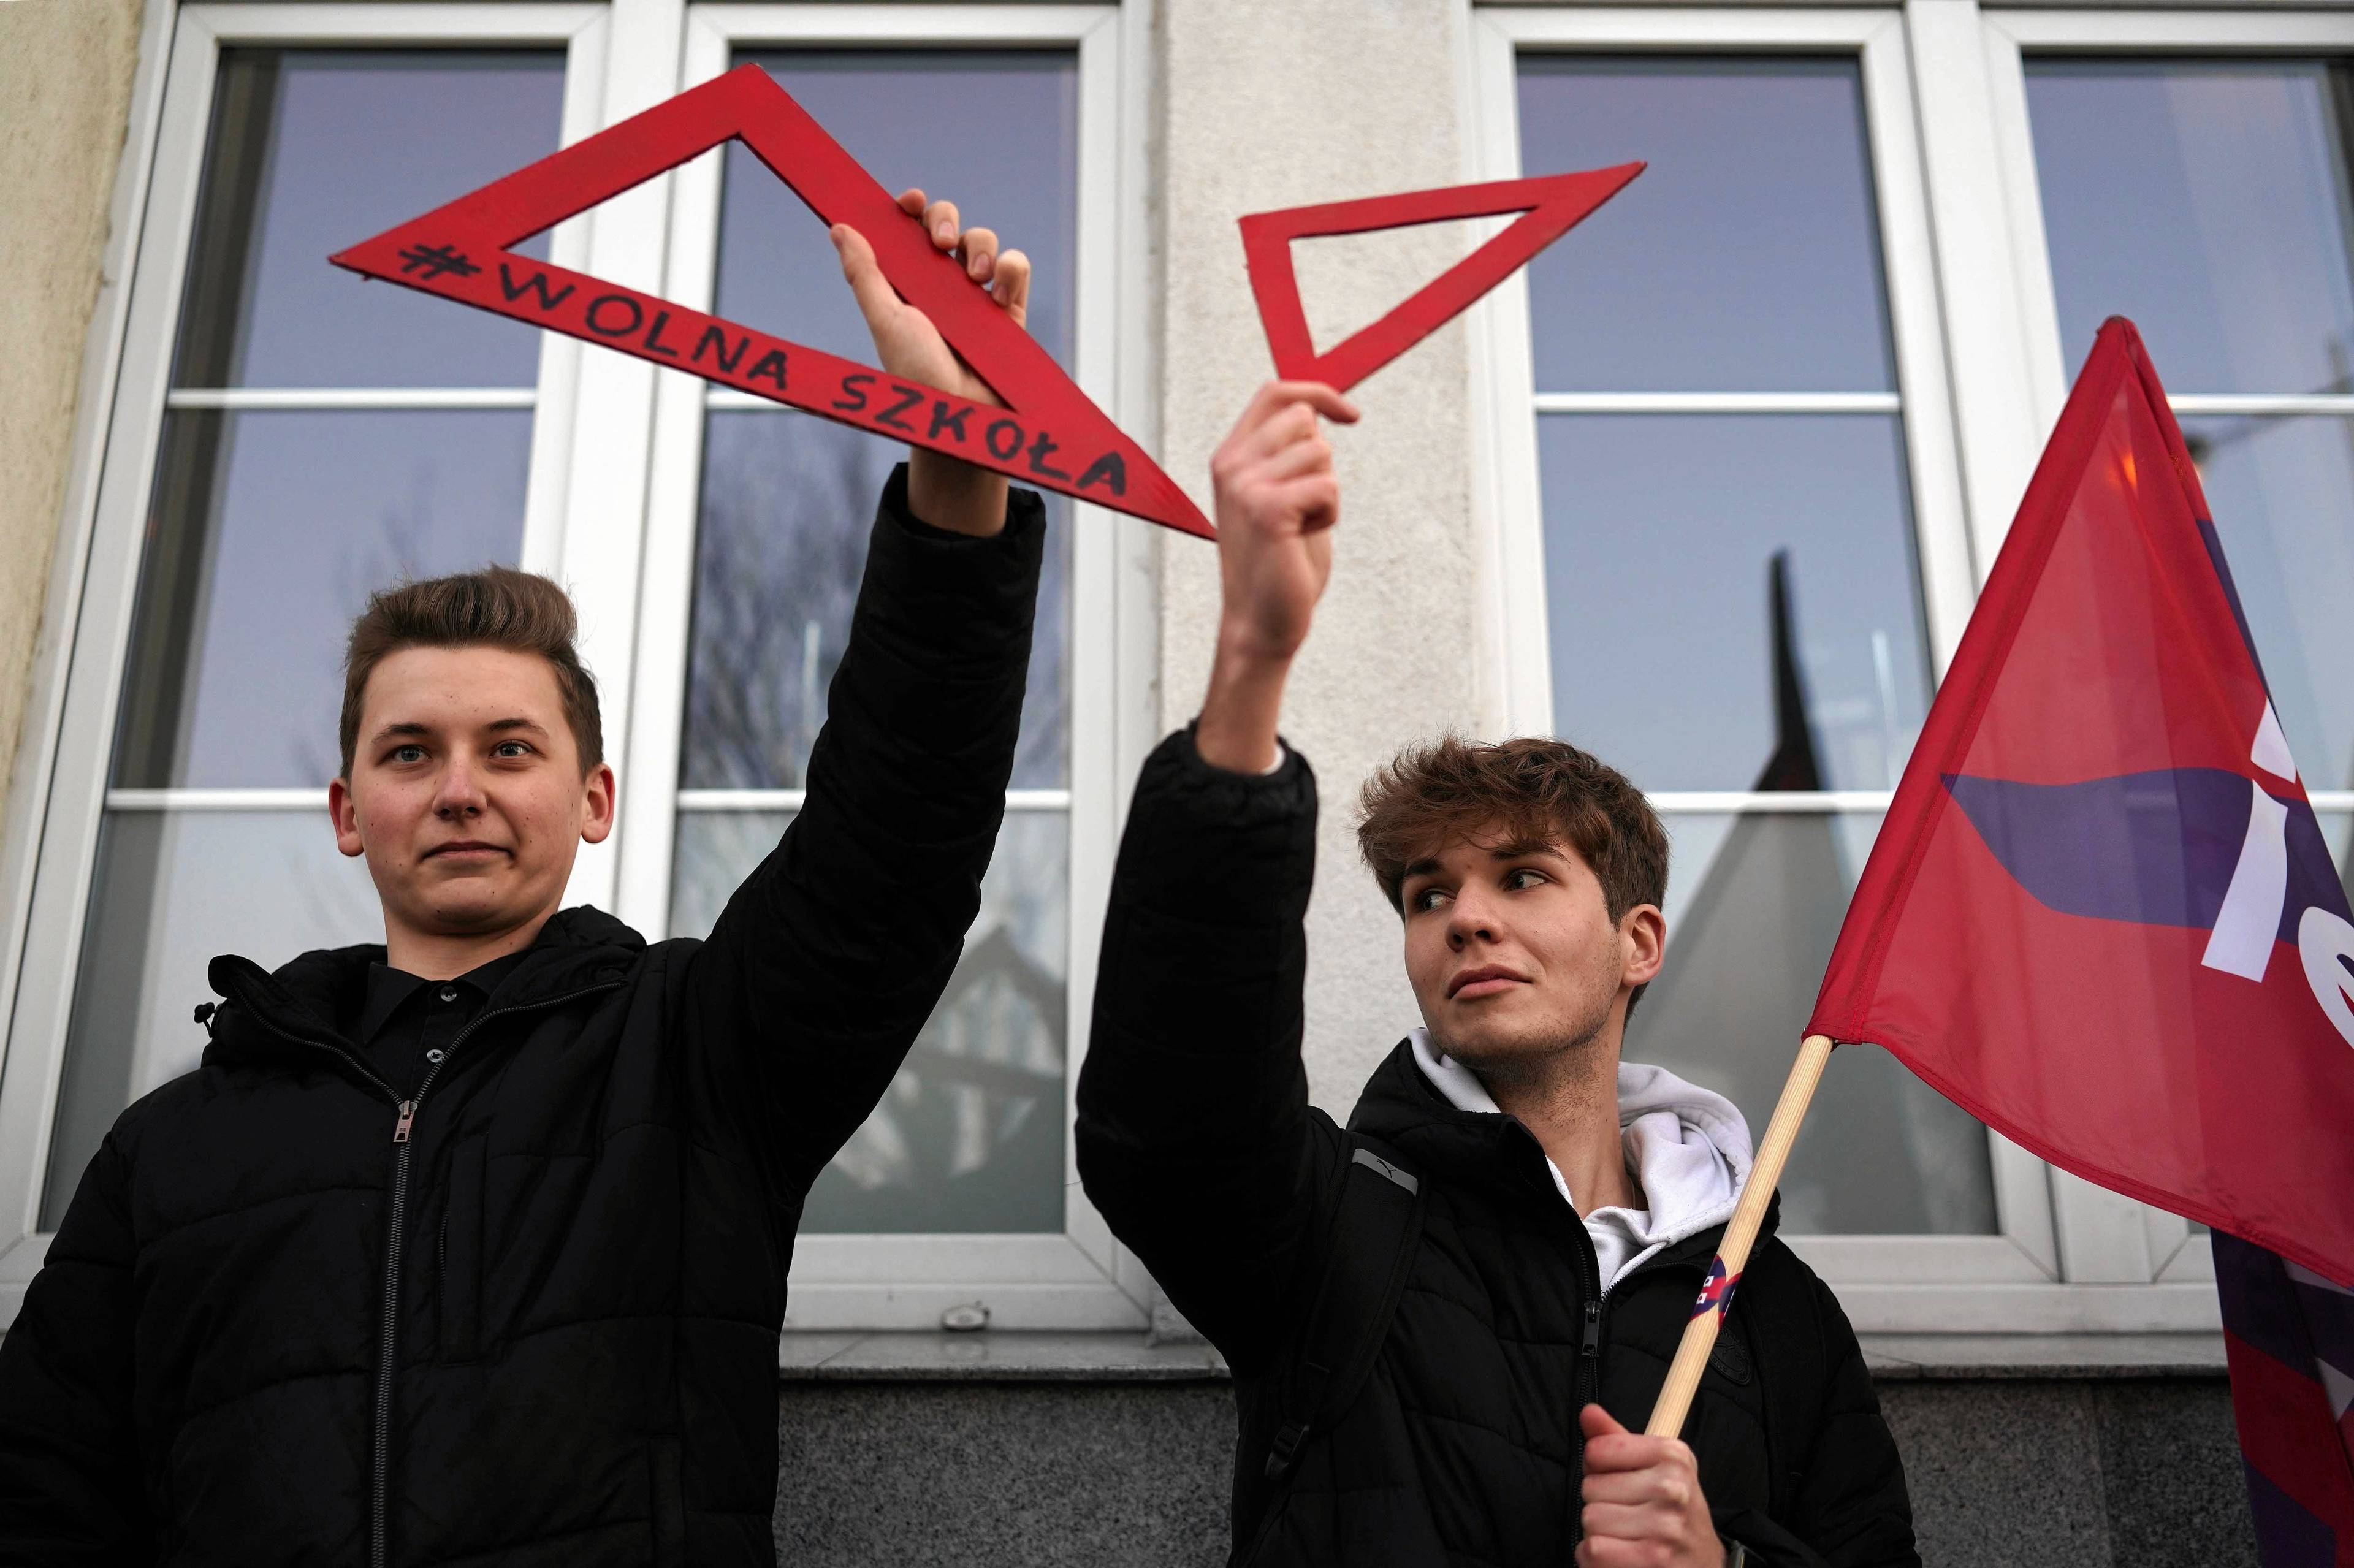 Na zdjęciu dwóch młodych chłopaków podczas manifestacji przeciwko ustawie lex Czarnek. Ubrani w czarne bluzy, w rękach trzymają czerwone ekierki - symbole sprzeciwu wobec szkodliwych zmian w oświacie